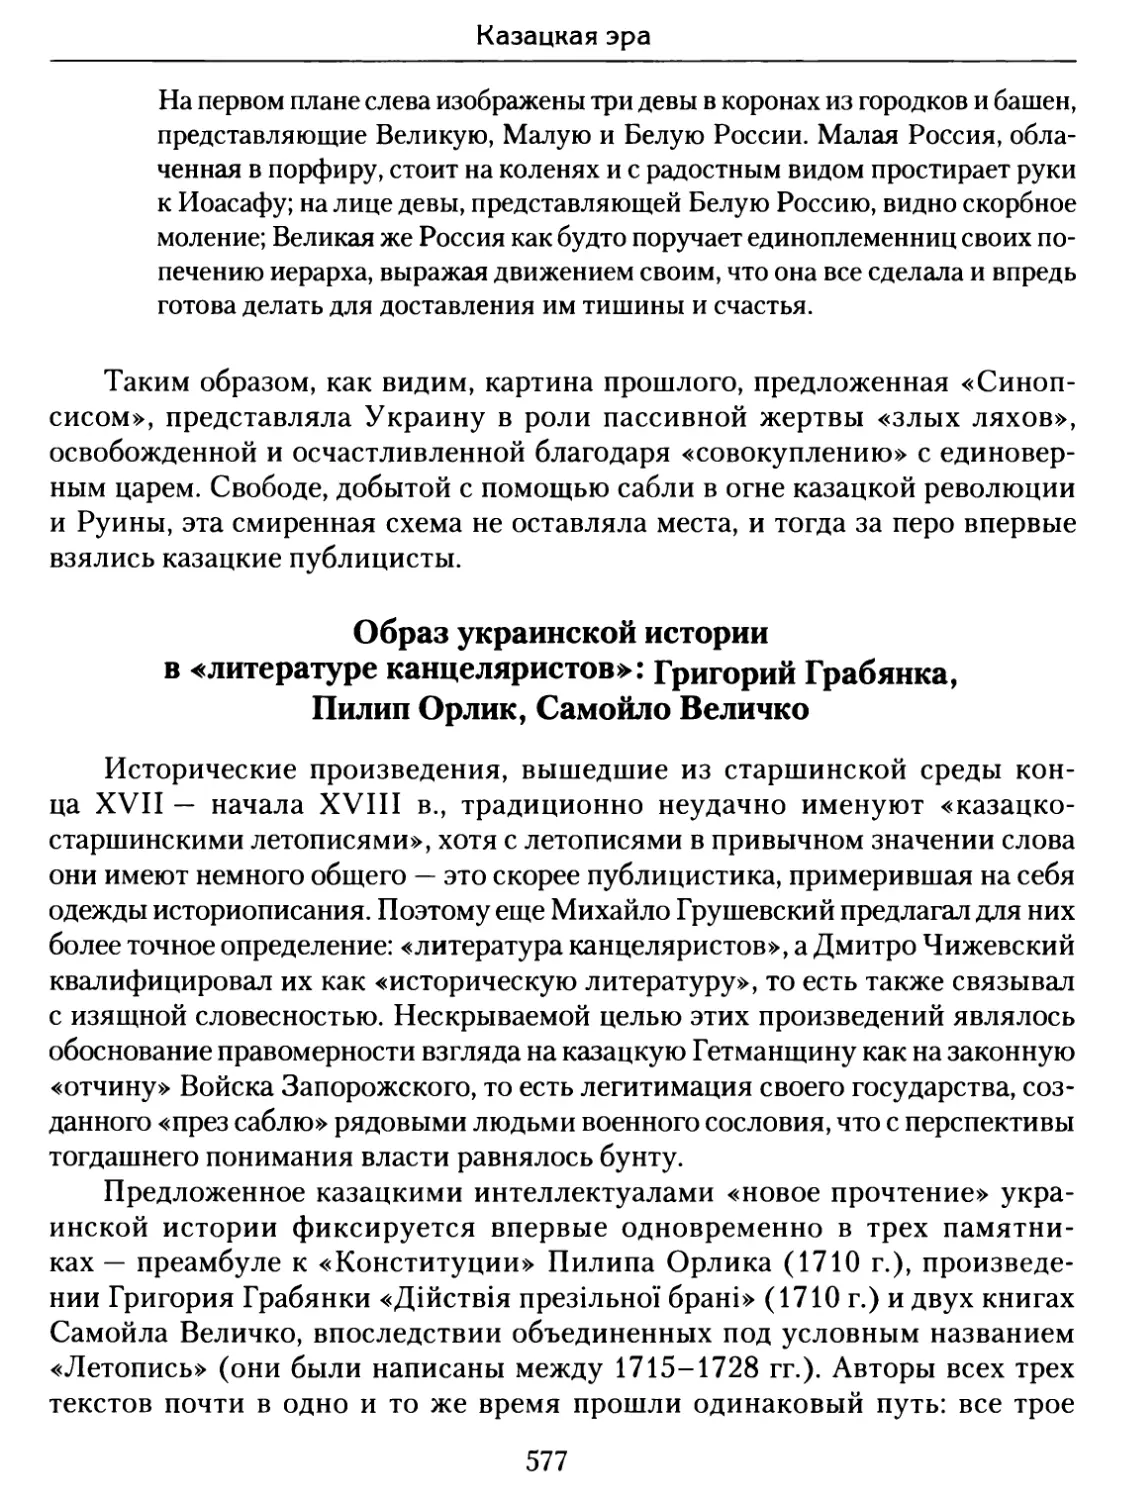 Образ украинской истории в «литературе канцеляристов»: Григорий Грабянка, Пилип Орлик, Самойло Величко